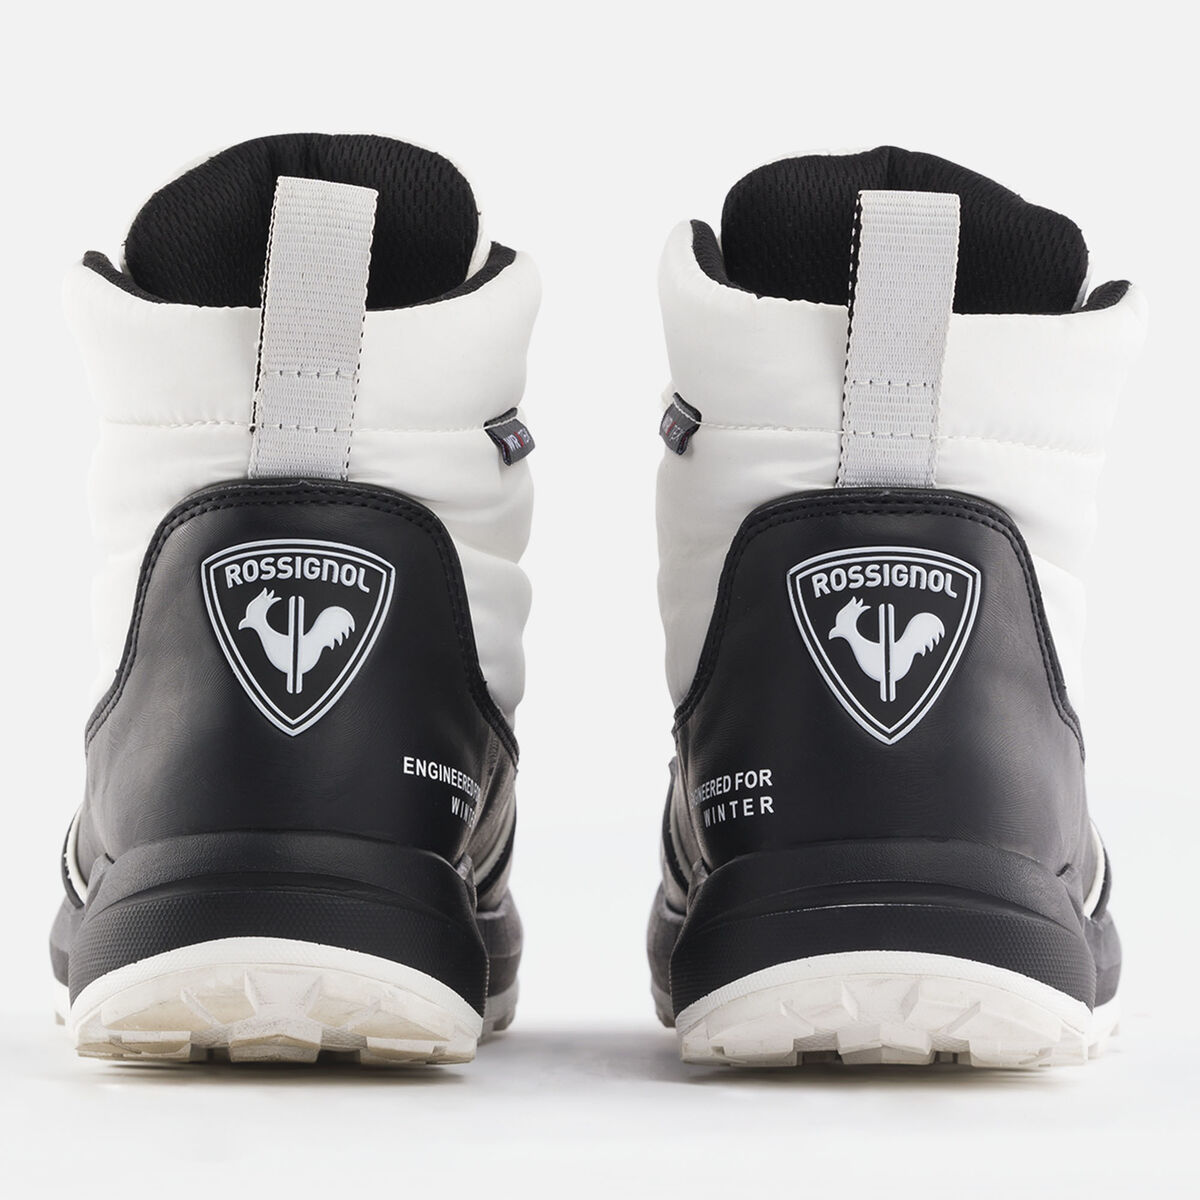 Podium White-Black Schuhe